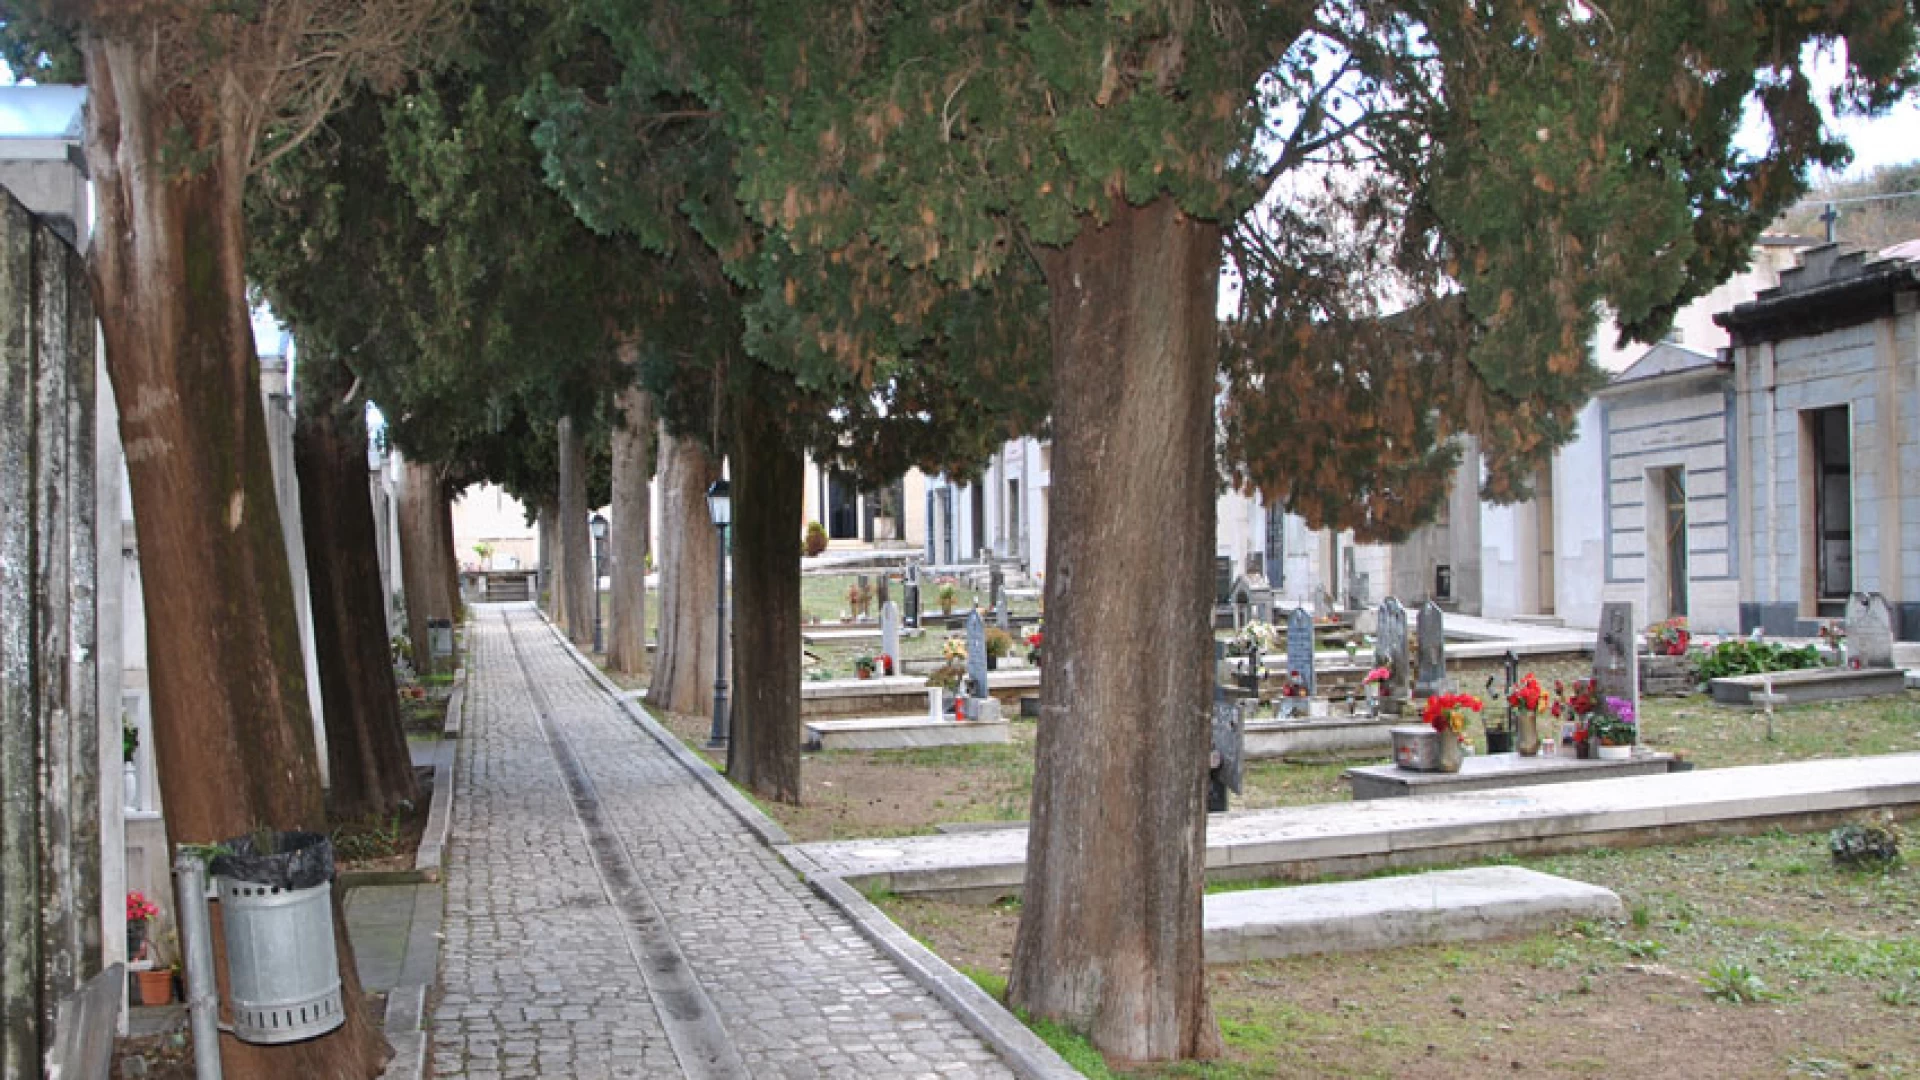 Colli a Volturno: chiusura del cimitero, il comune idea le visite virtuali ai propri cari. Verranno trasmesse benedizioni e dirette streaming per omaggiare i defunti.